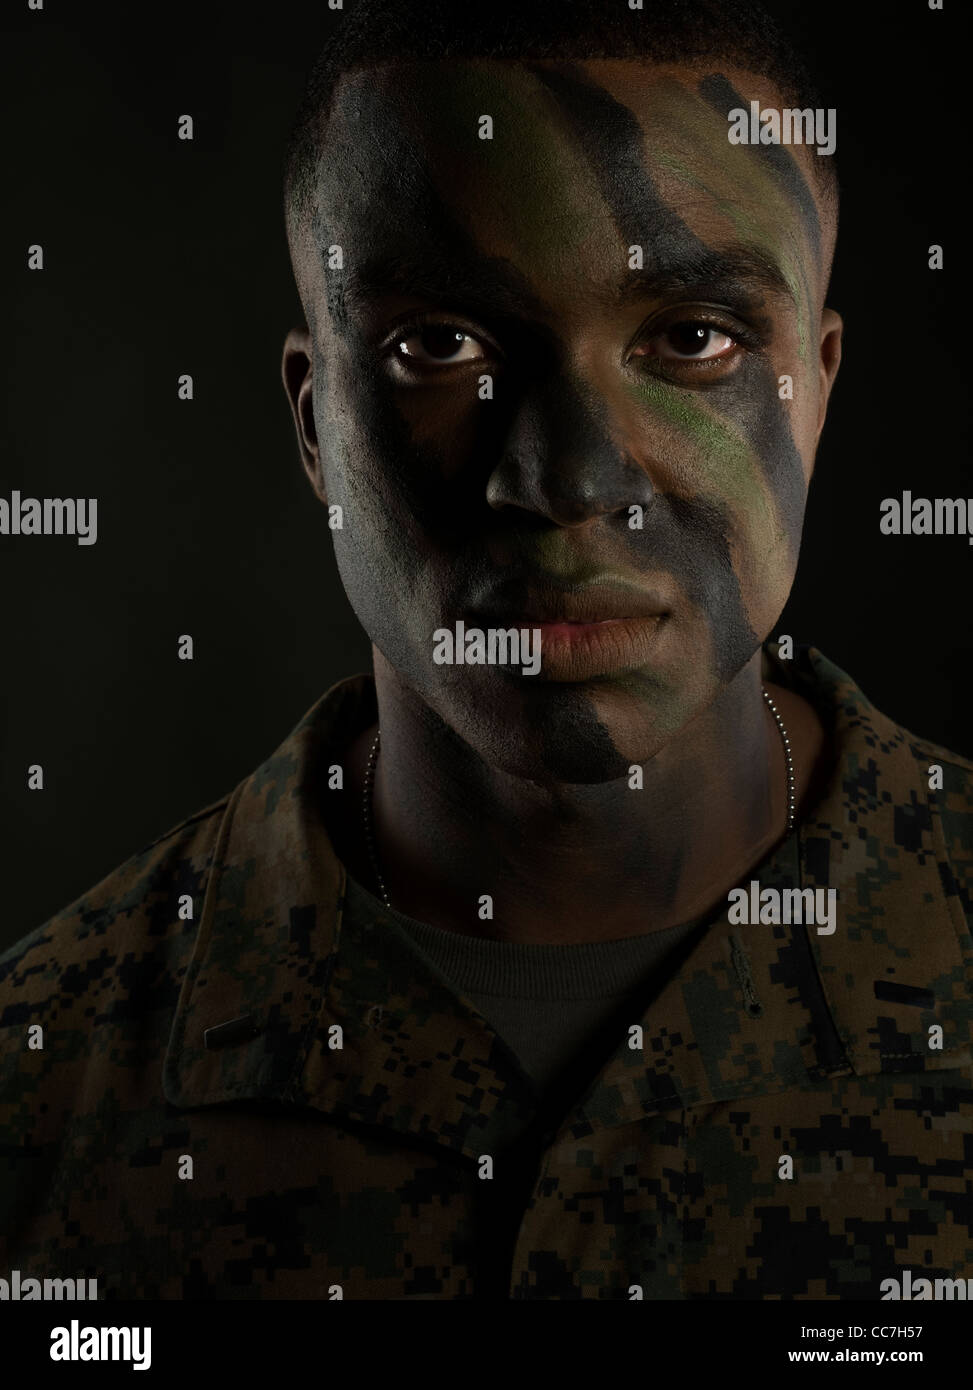 Officier du Corps des Marines des États-Unis en uniforme de camouflage digital MARPAT camo et la peinture pour le visage Banque D'Images